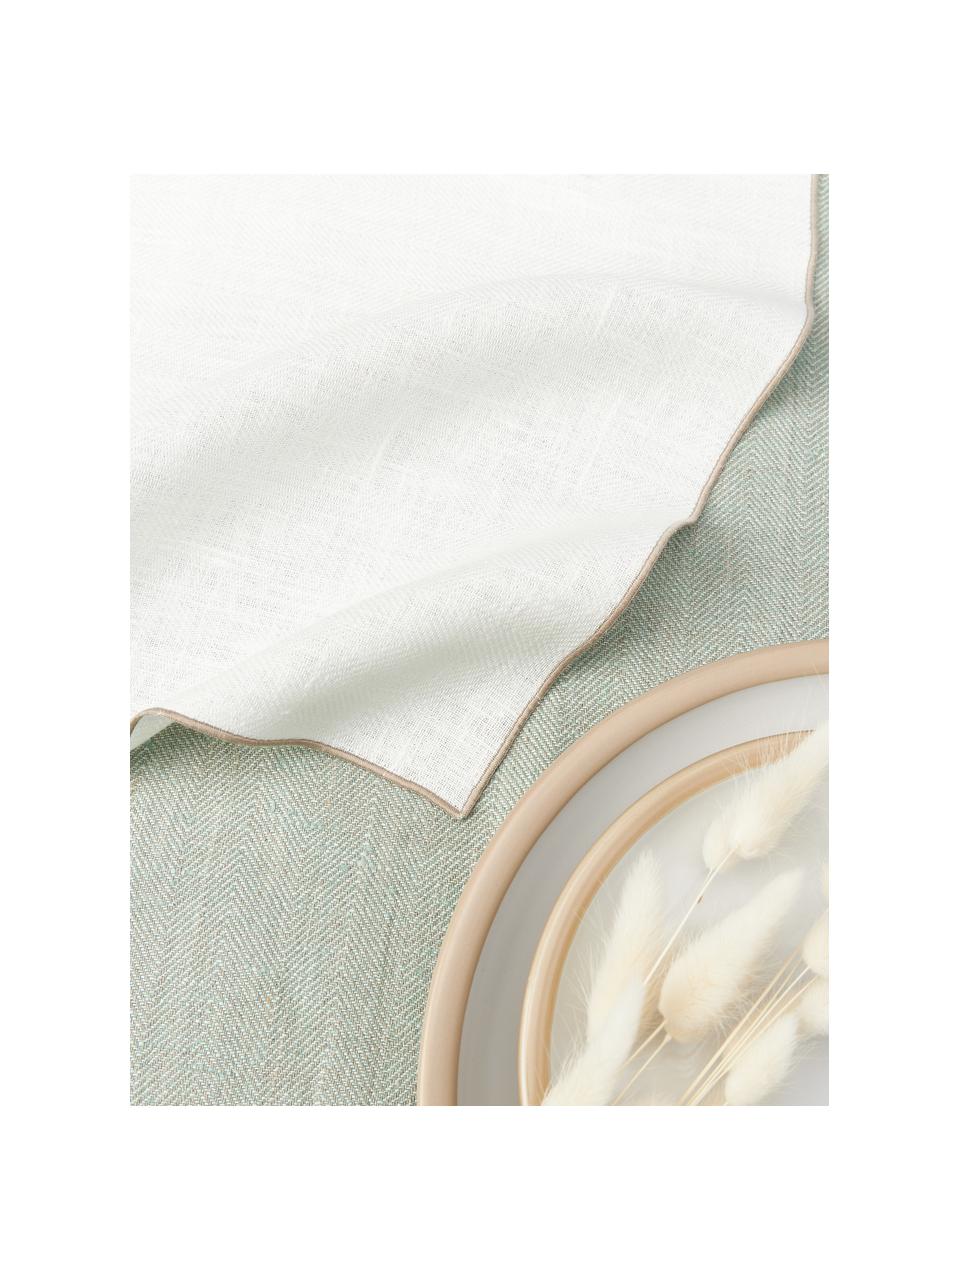 Serviettes de table en lin motif chevrons Audra, 6 pièces, 100 % pur lin, Blanc, beige, larg. 46 x long. 46 cm